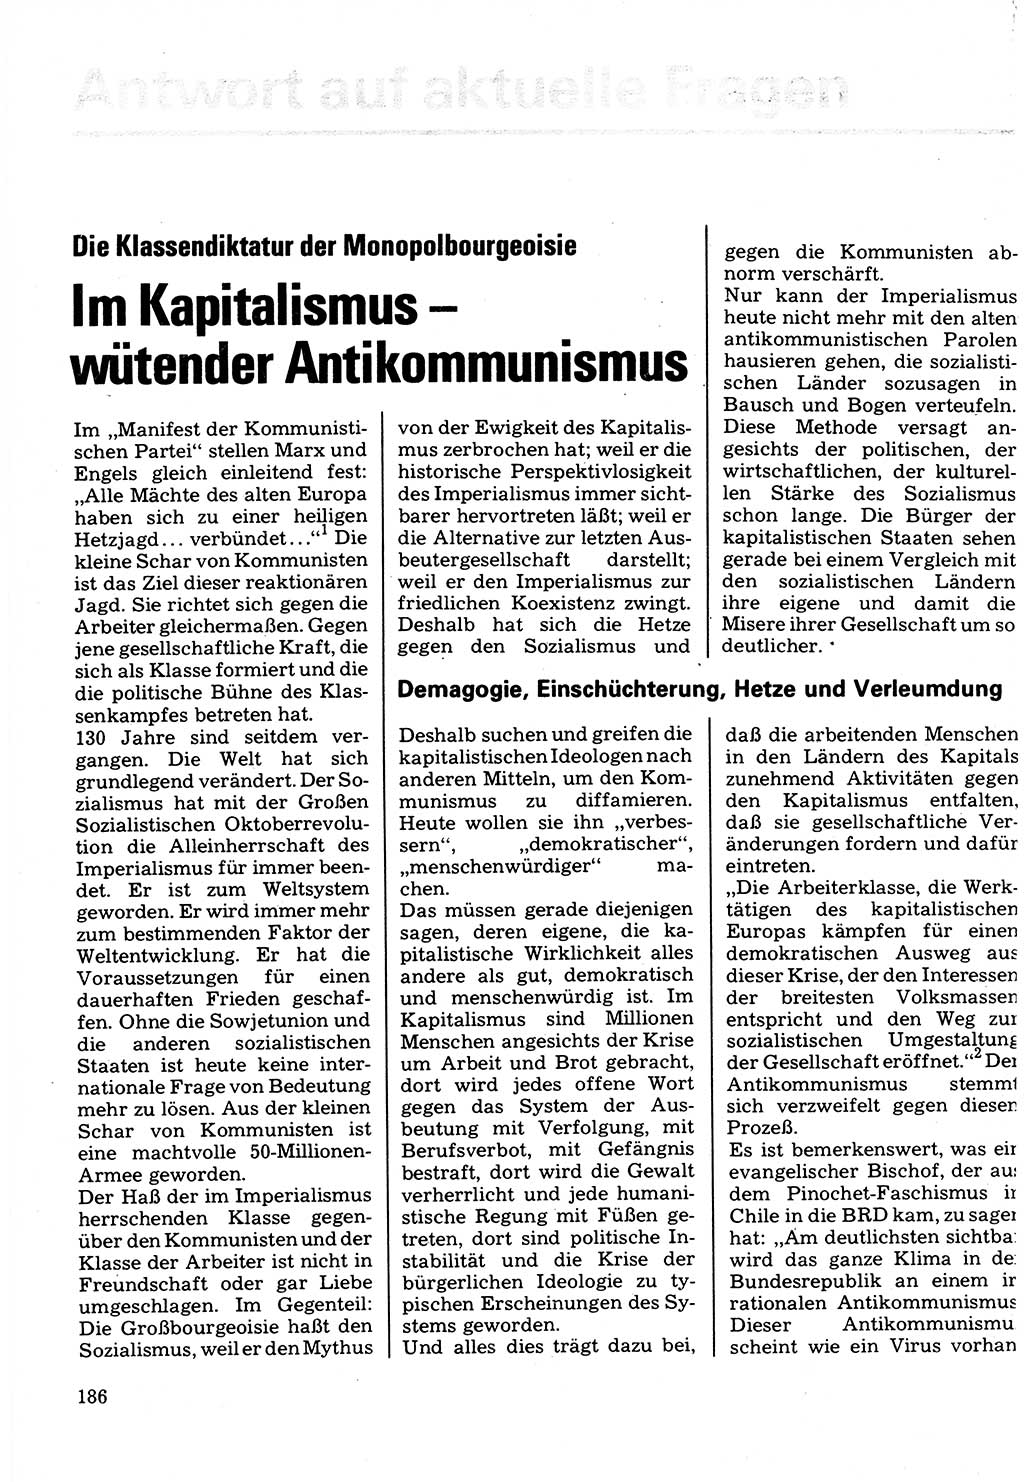 Neuer Weg (NW), Organ des Zentralkomitees (ZK) der SED (Sozialistische Einheitspartei Deutschlands) für Fragen des Parteilebens, 32. Jahrgang [Deutsche Demokratische Republik (DDR)] 1977, Seite 186 (NW ZK SED DDR 1977, S. 186)